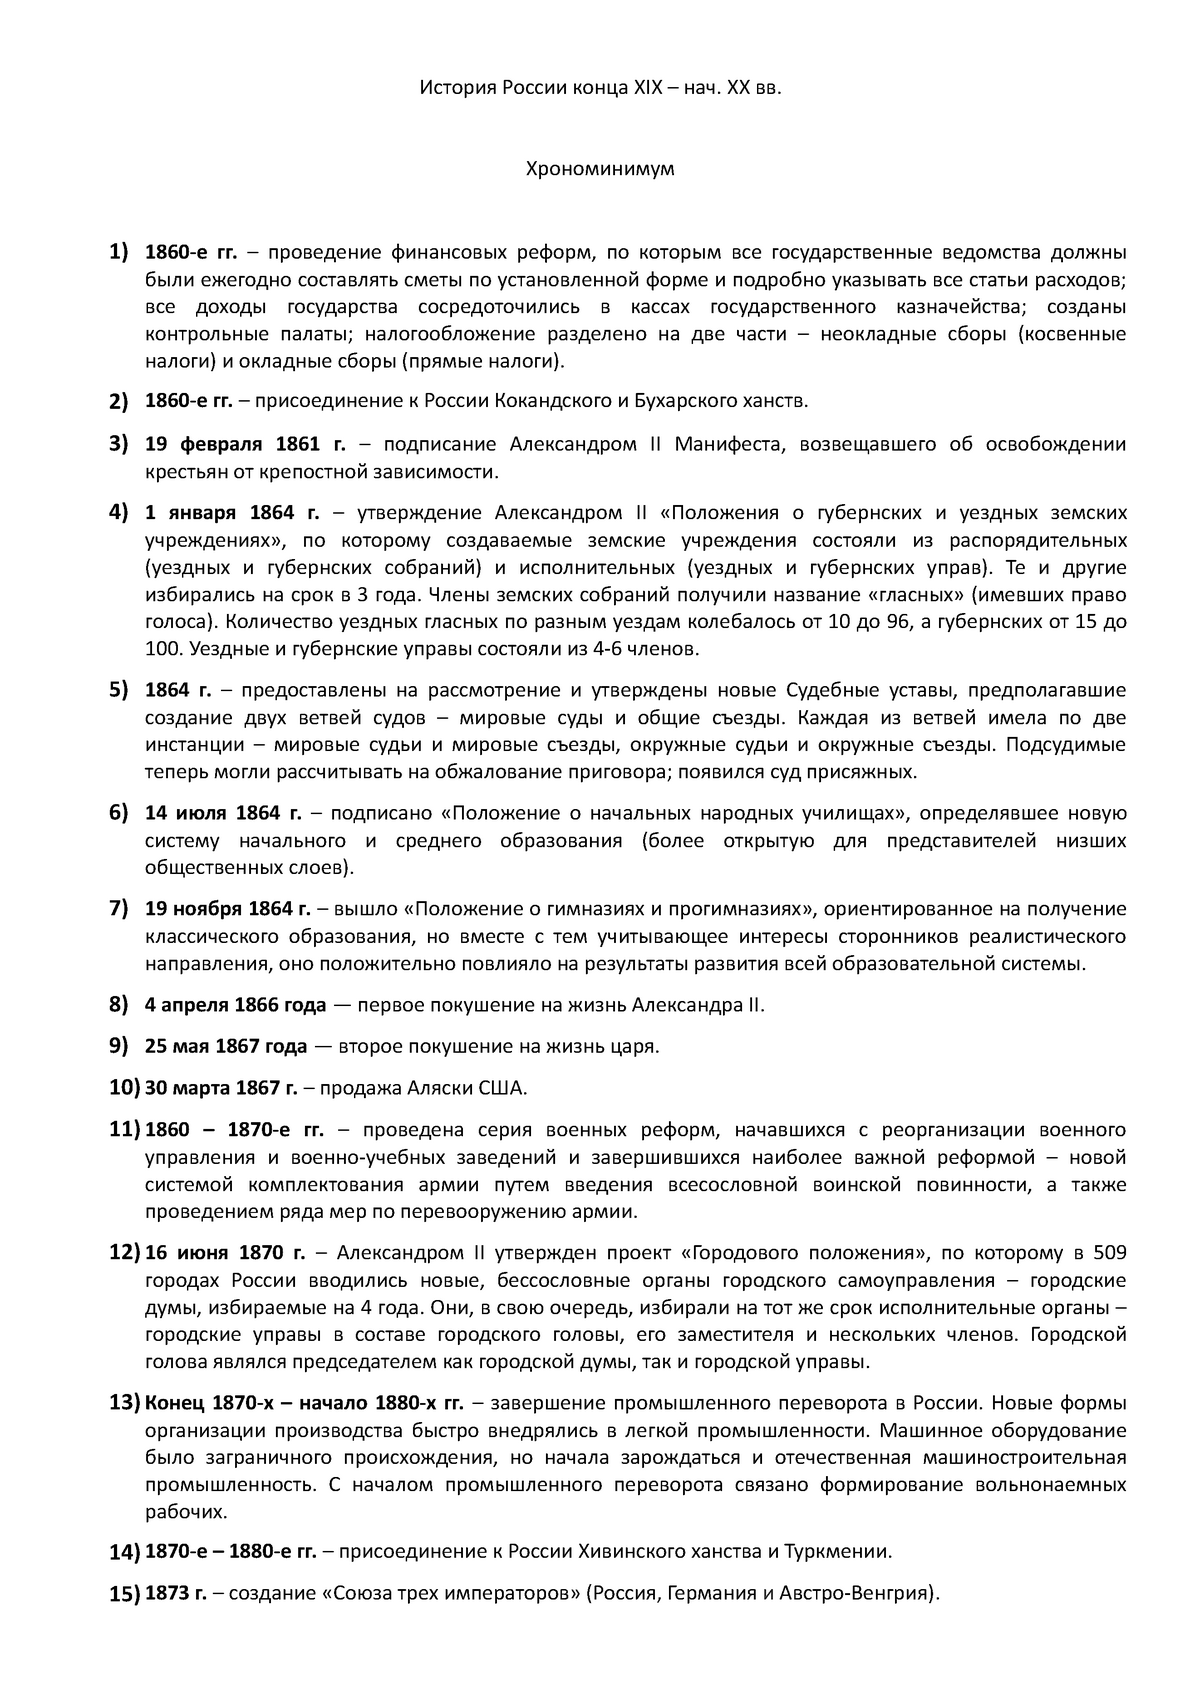 Контрольная работа: Реформа городского управления 1870 года в Российской империи